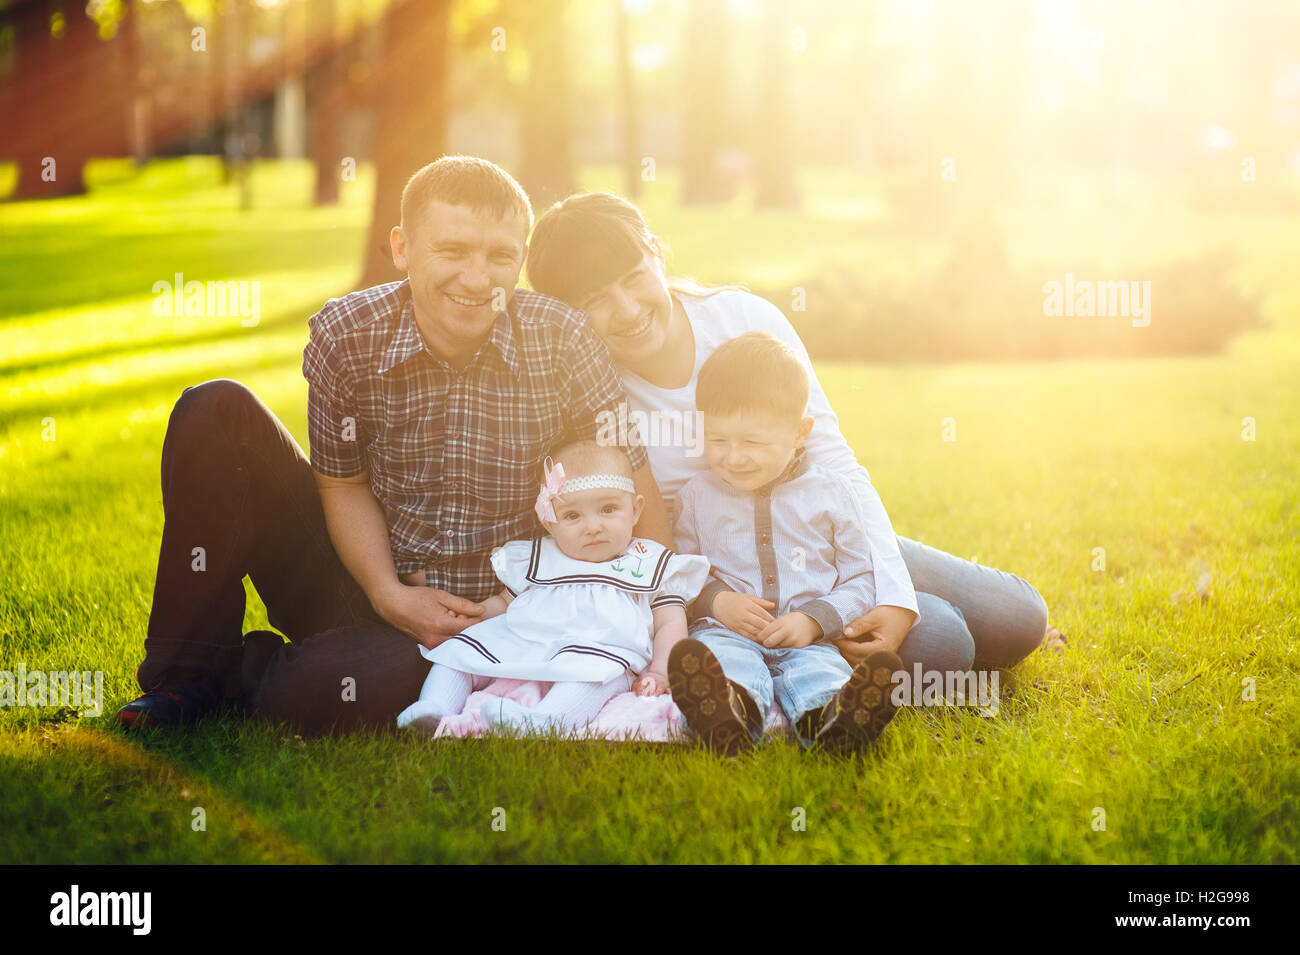 Una familia joven con dos niños caminando en un parque de verano Foto de stock